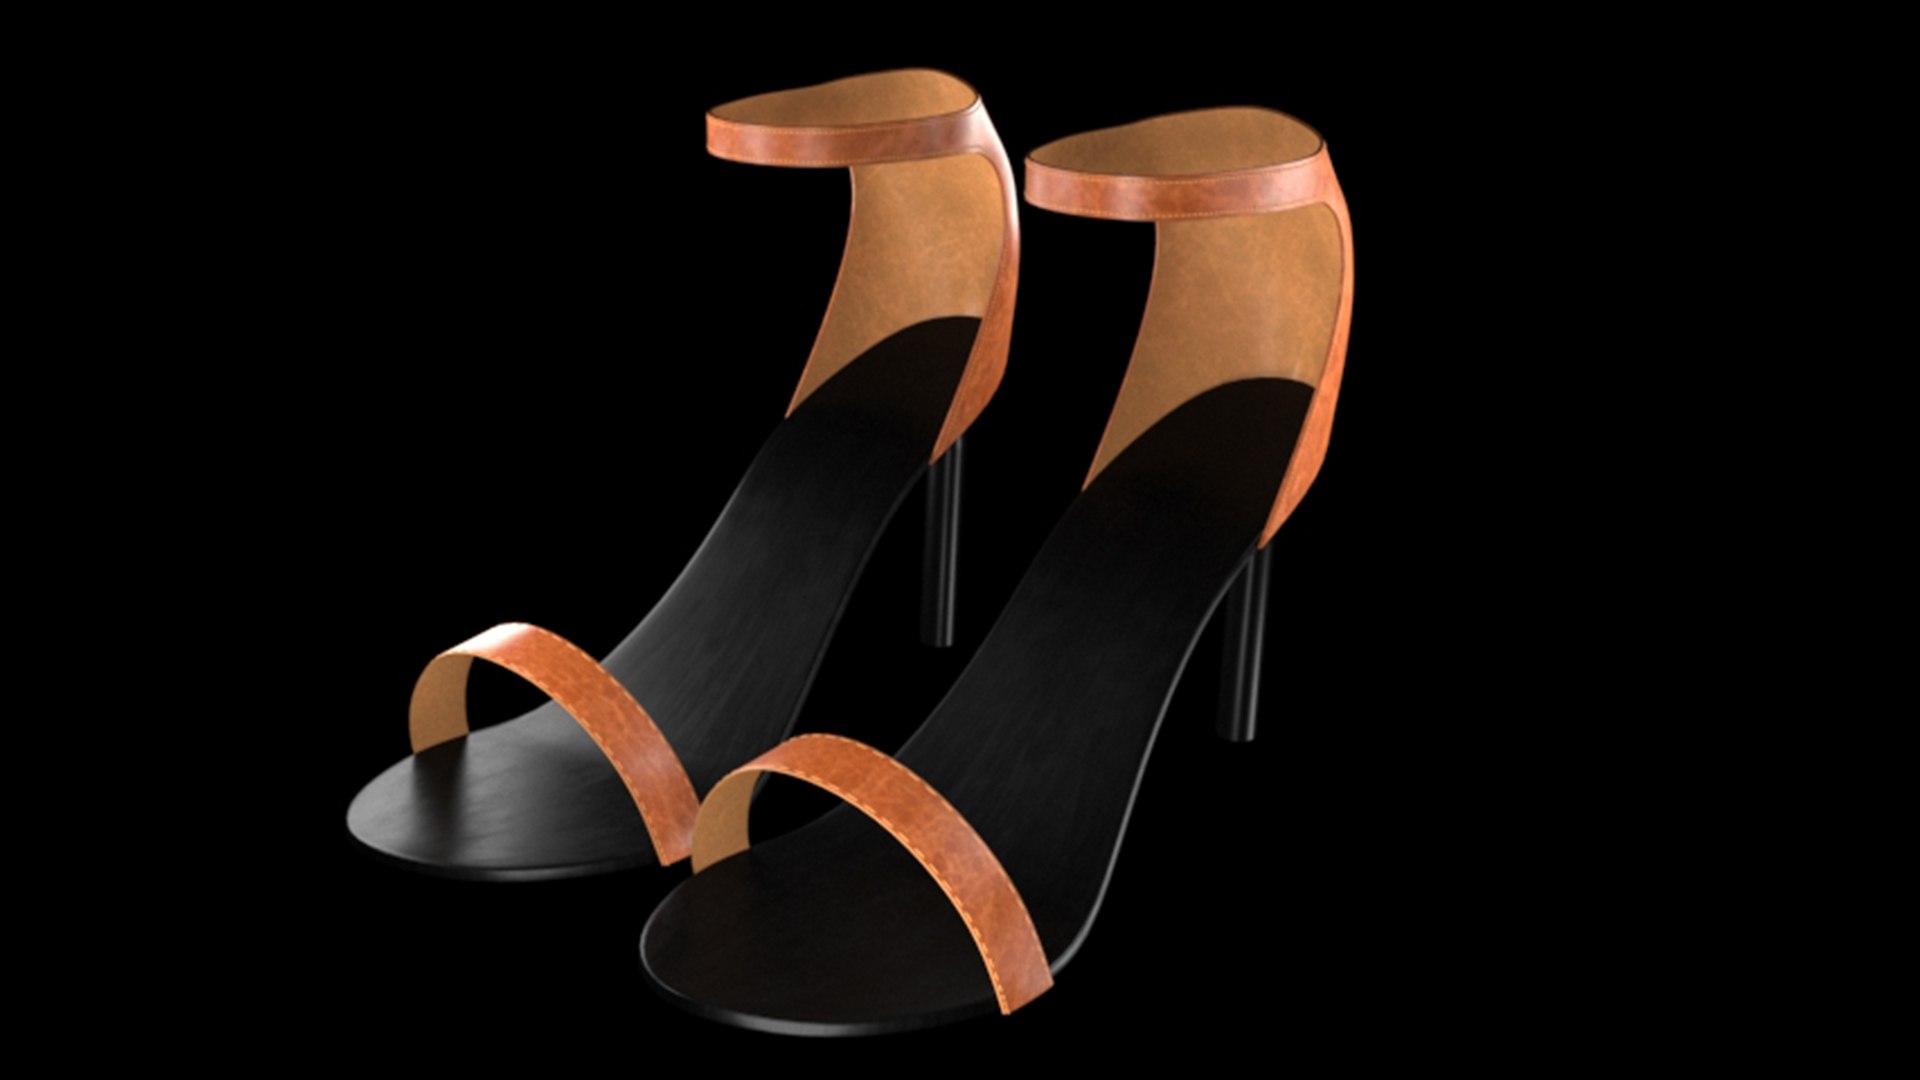 3D Women Shoes 3D model - TurboSquid 1779909